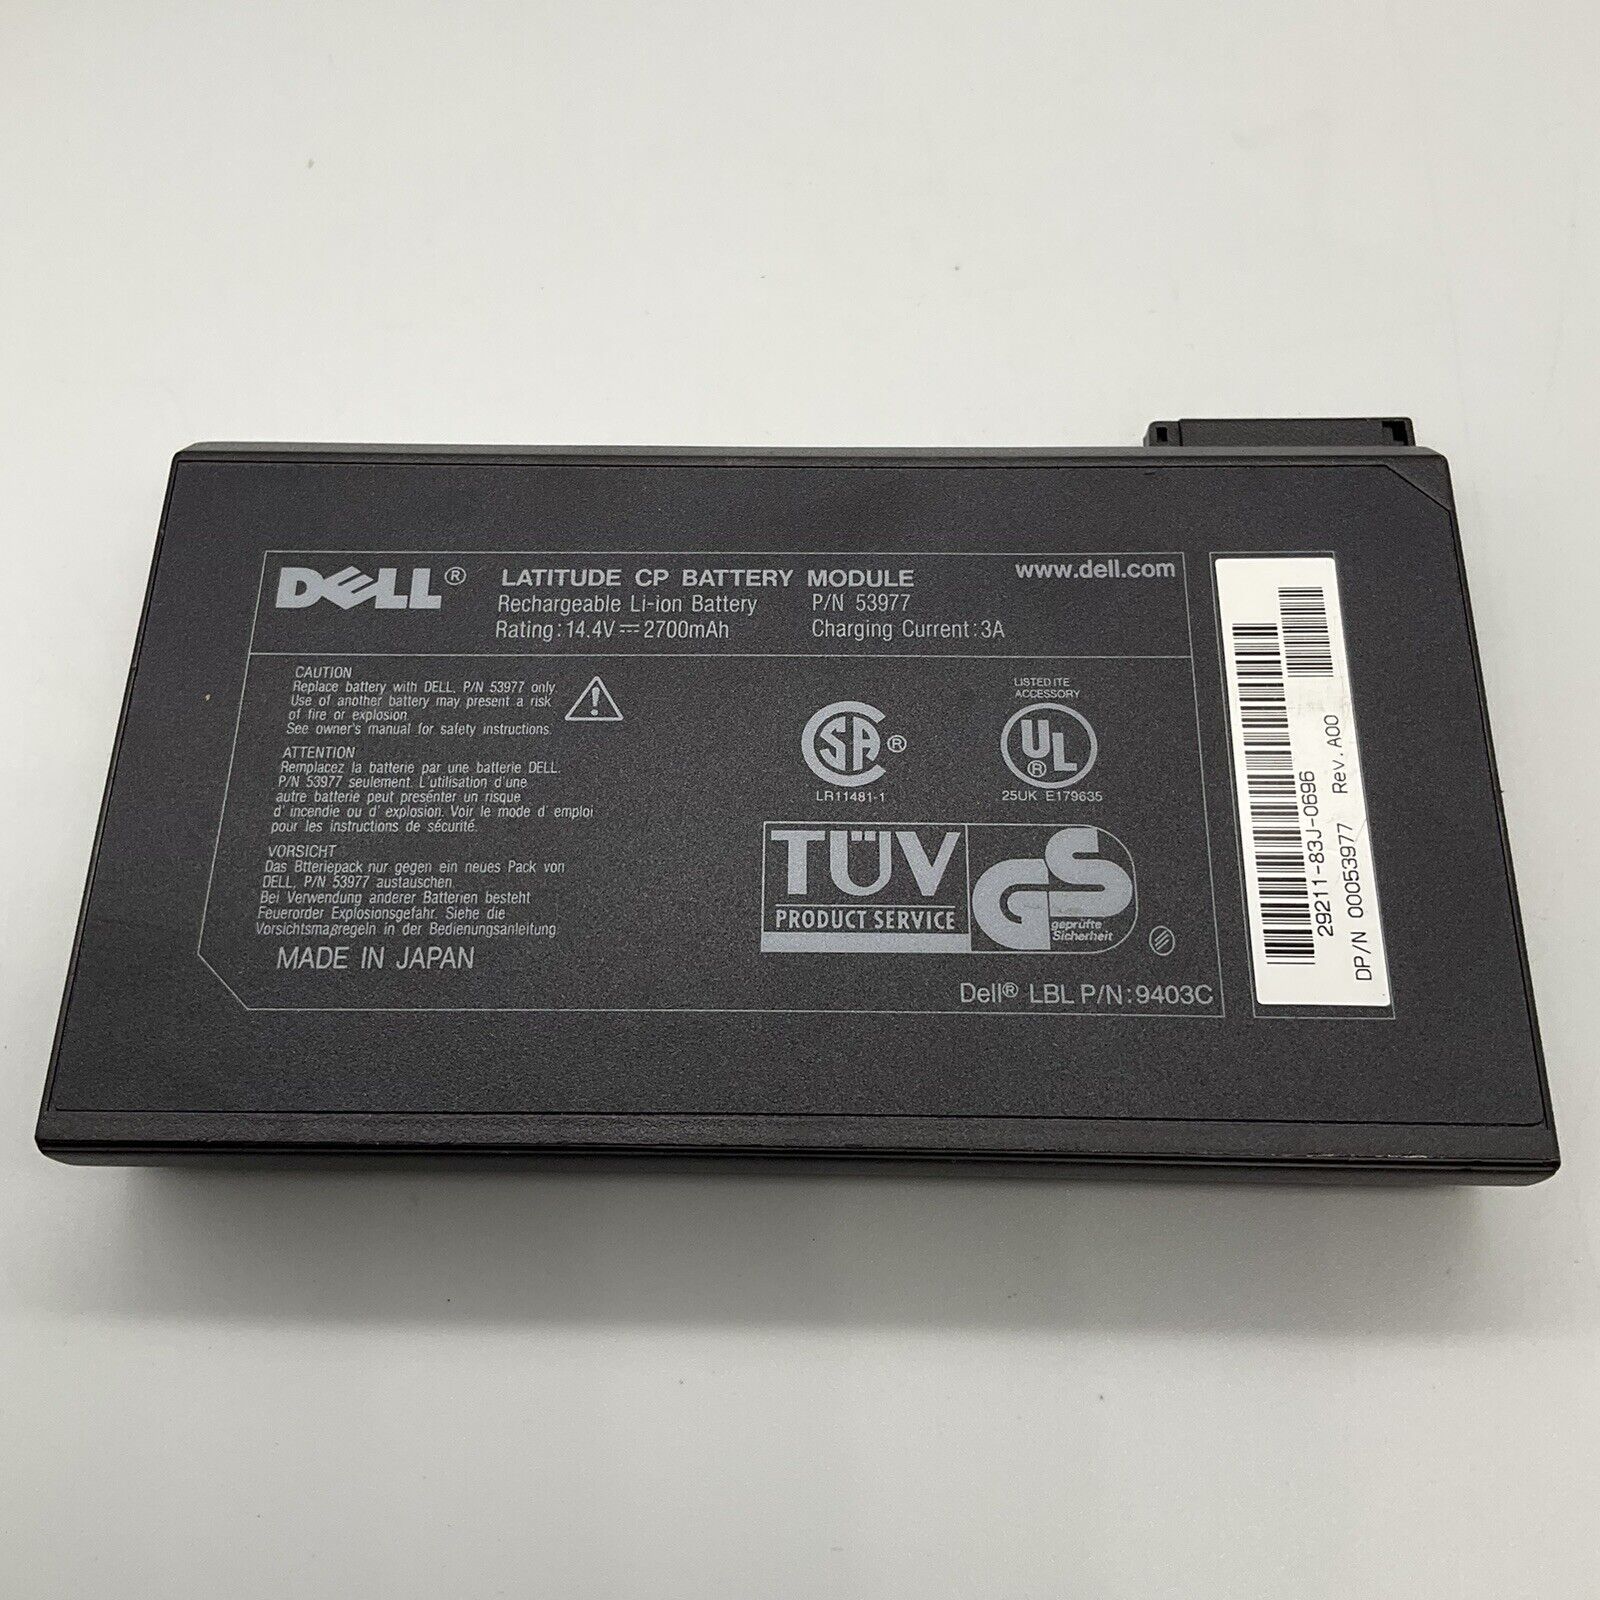 Dell Latitude CP Battery Module 53977 Untested